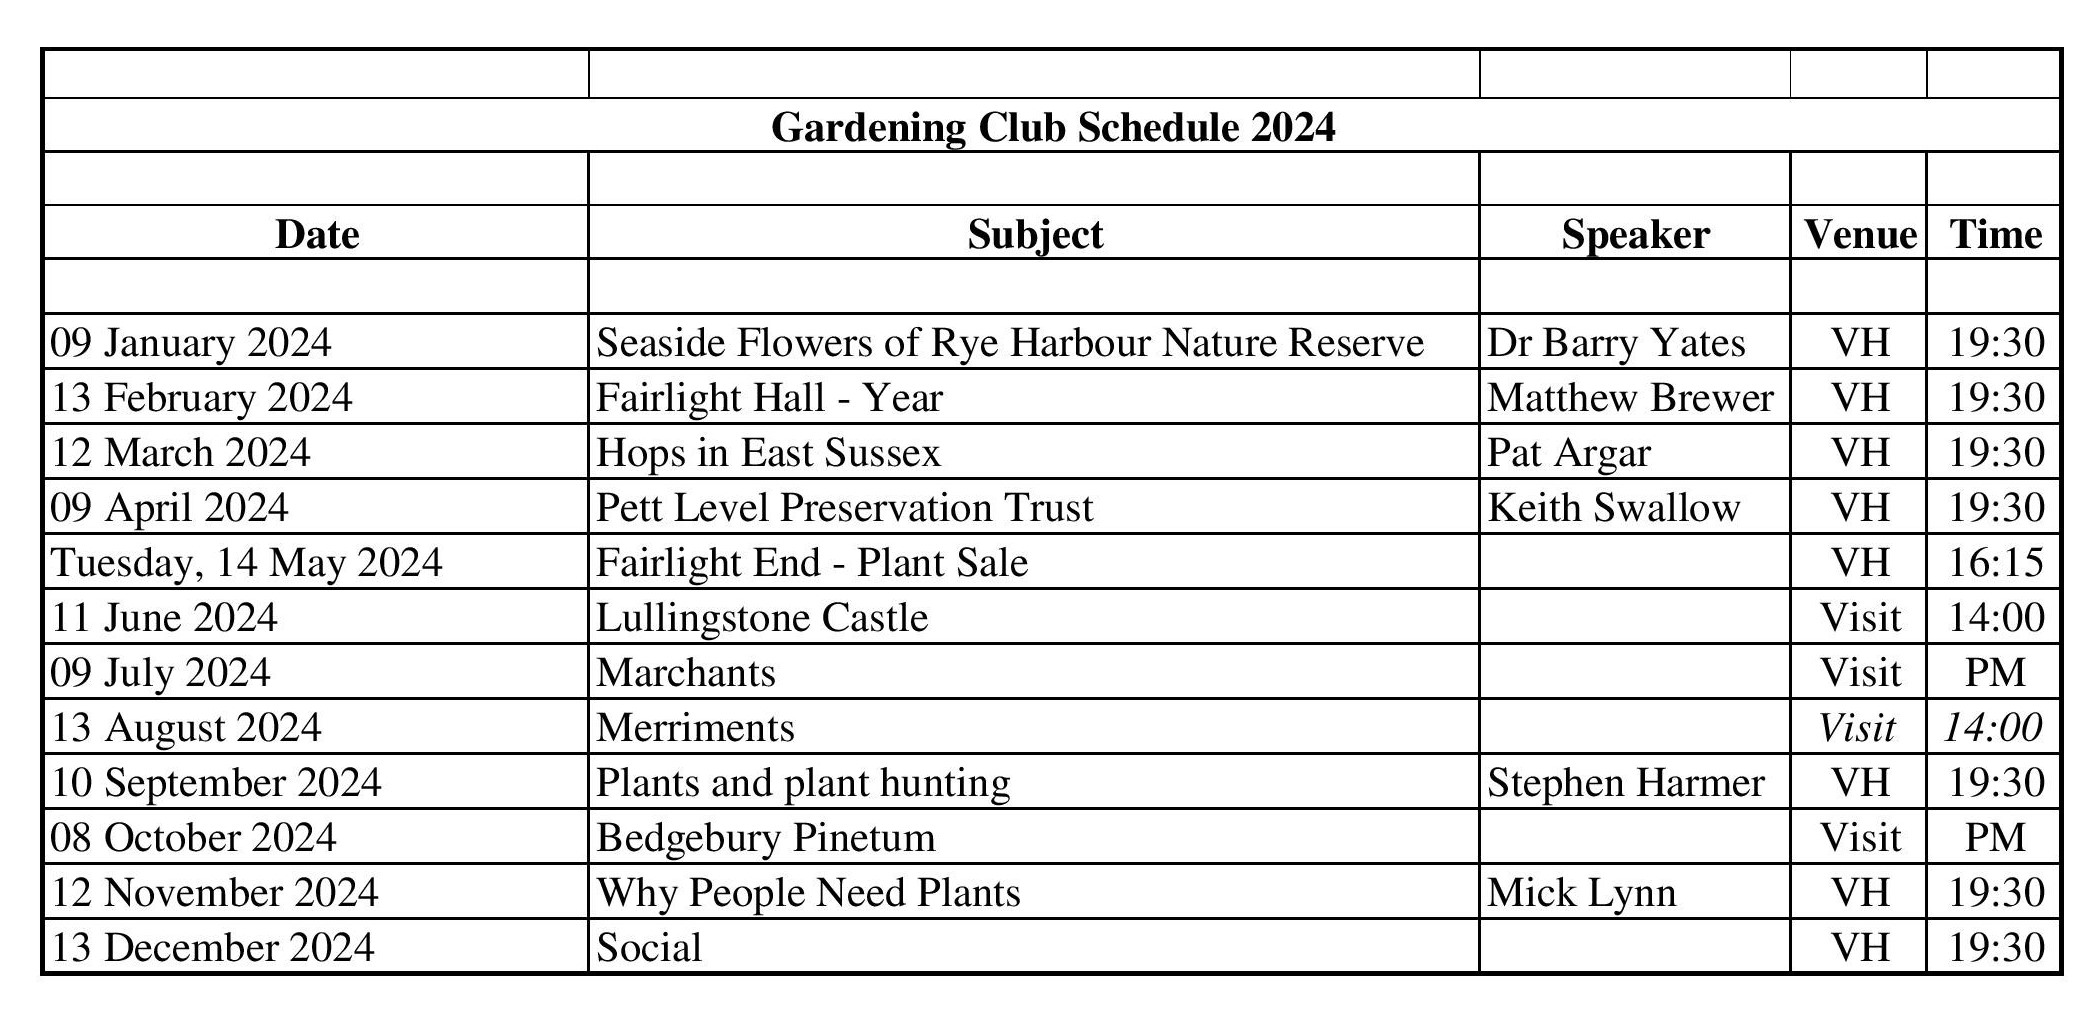 Gardening Club Schedule 2024 